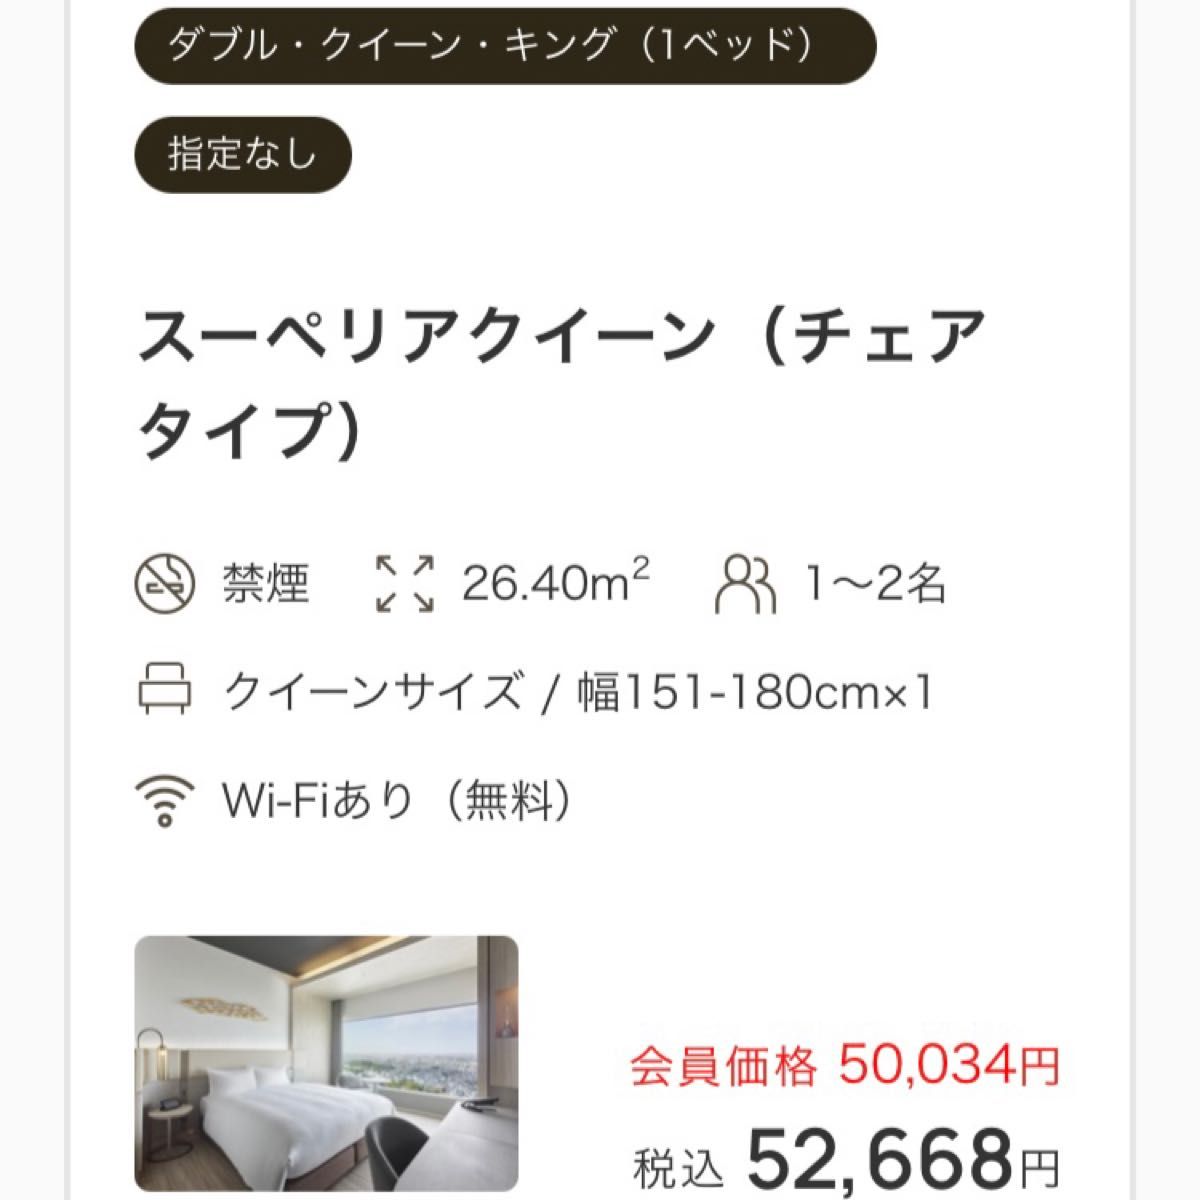 三井ガーデンホテル宿泊 Special coupon